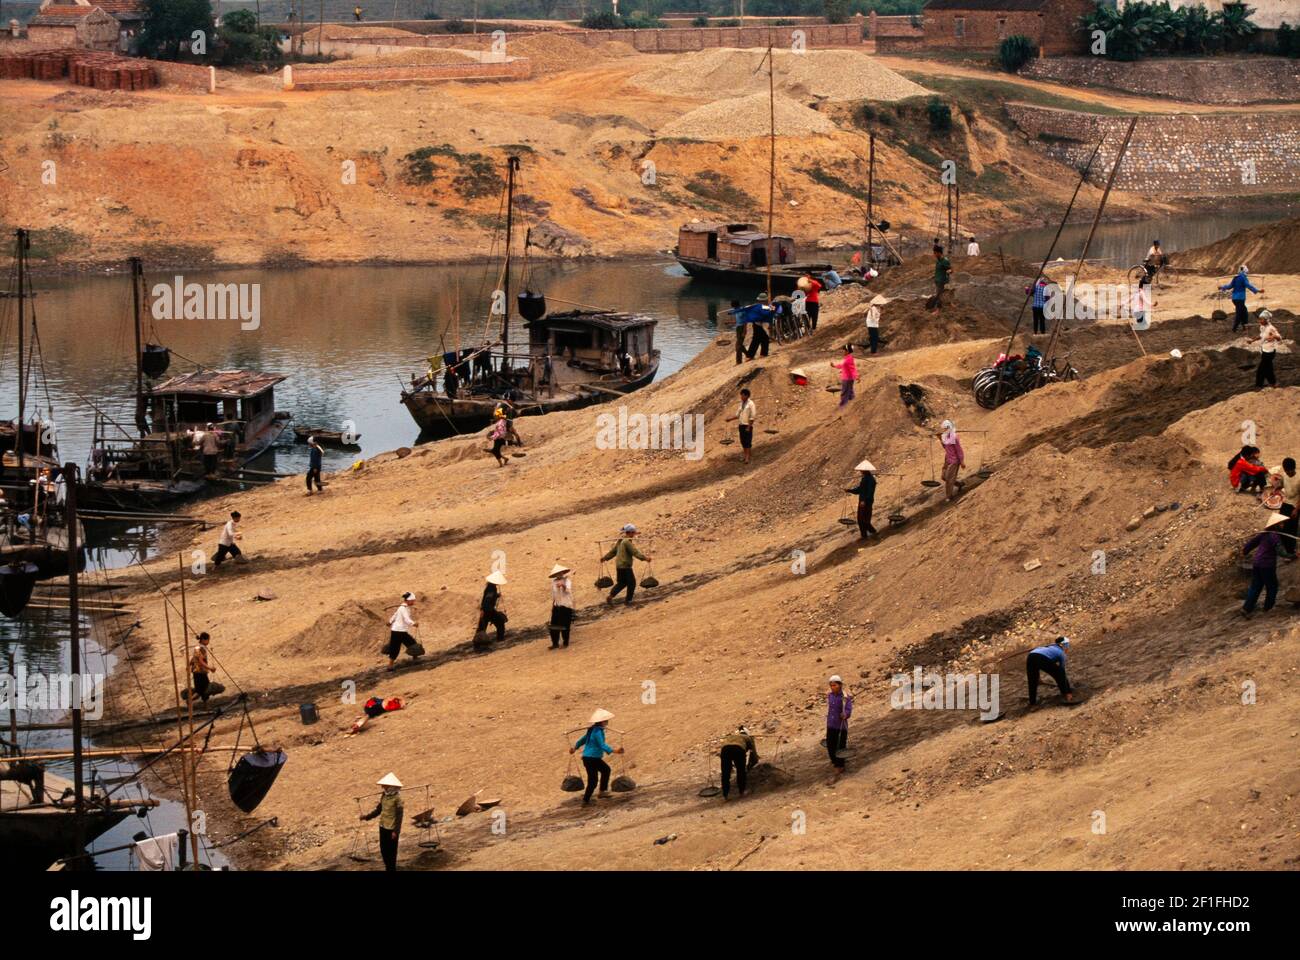 Travailleurs transportant des matériaux de construction à partir de barges fluviales pour une nouvelle construction sur la rive fluviale, dans le sud rural du Vietnam, octobre 1995 Banque D'Images